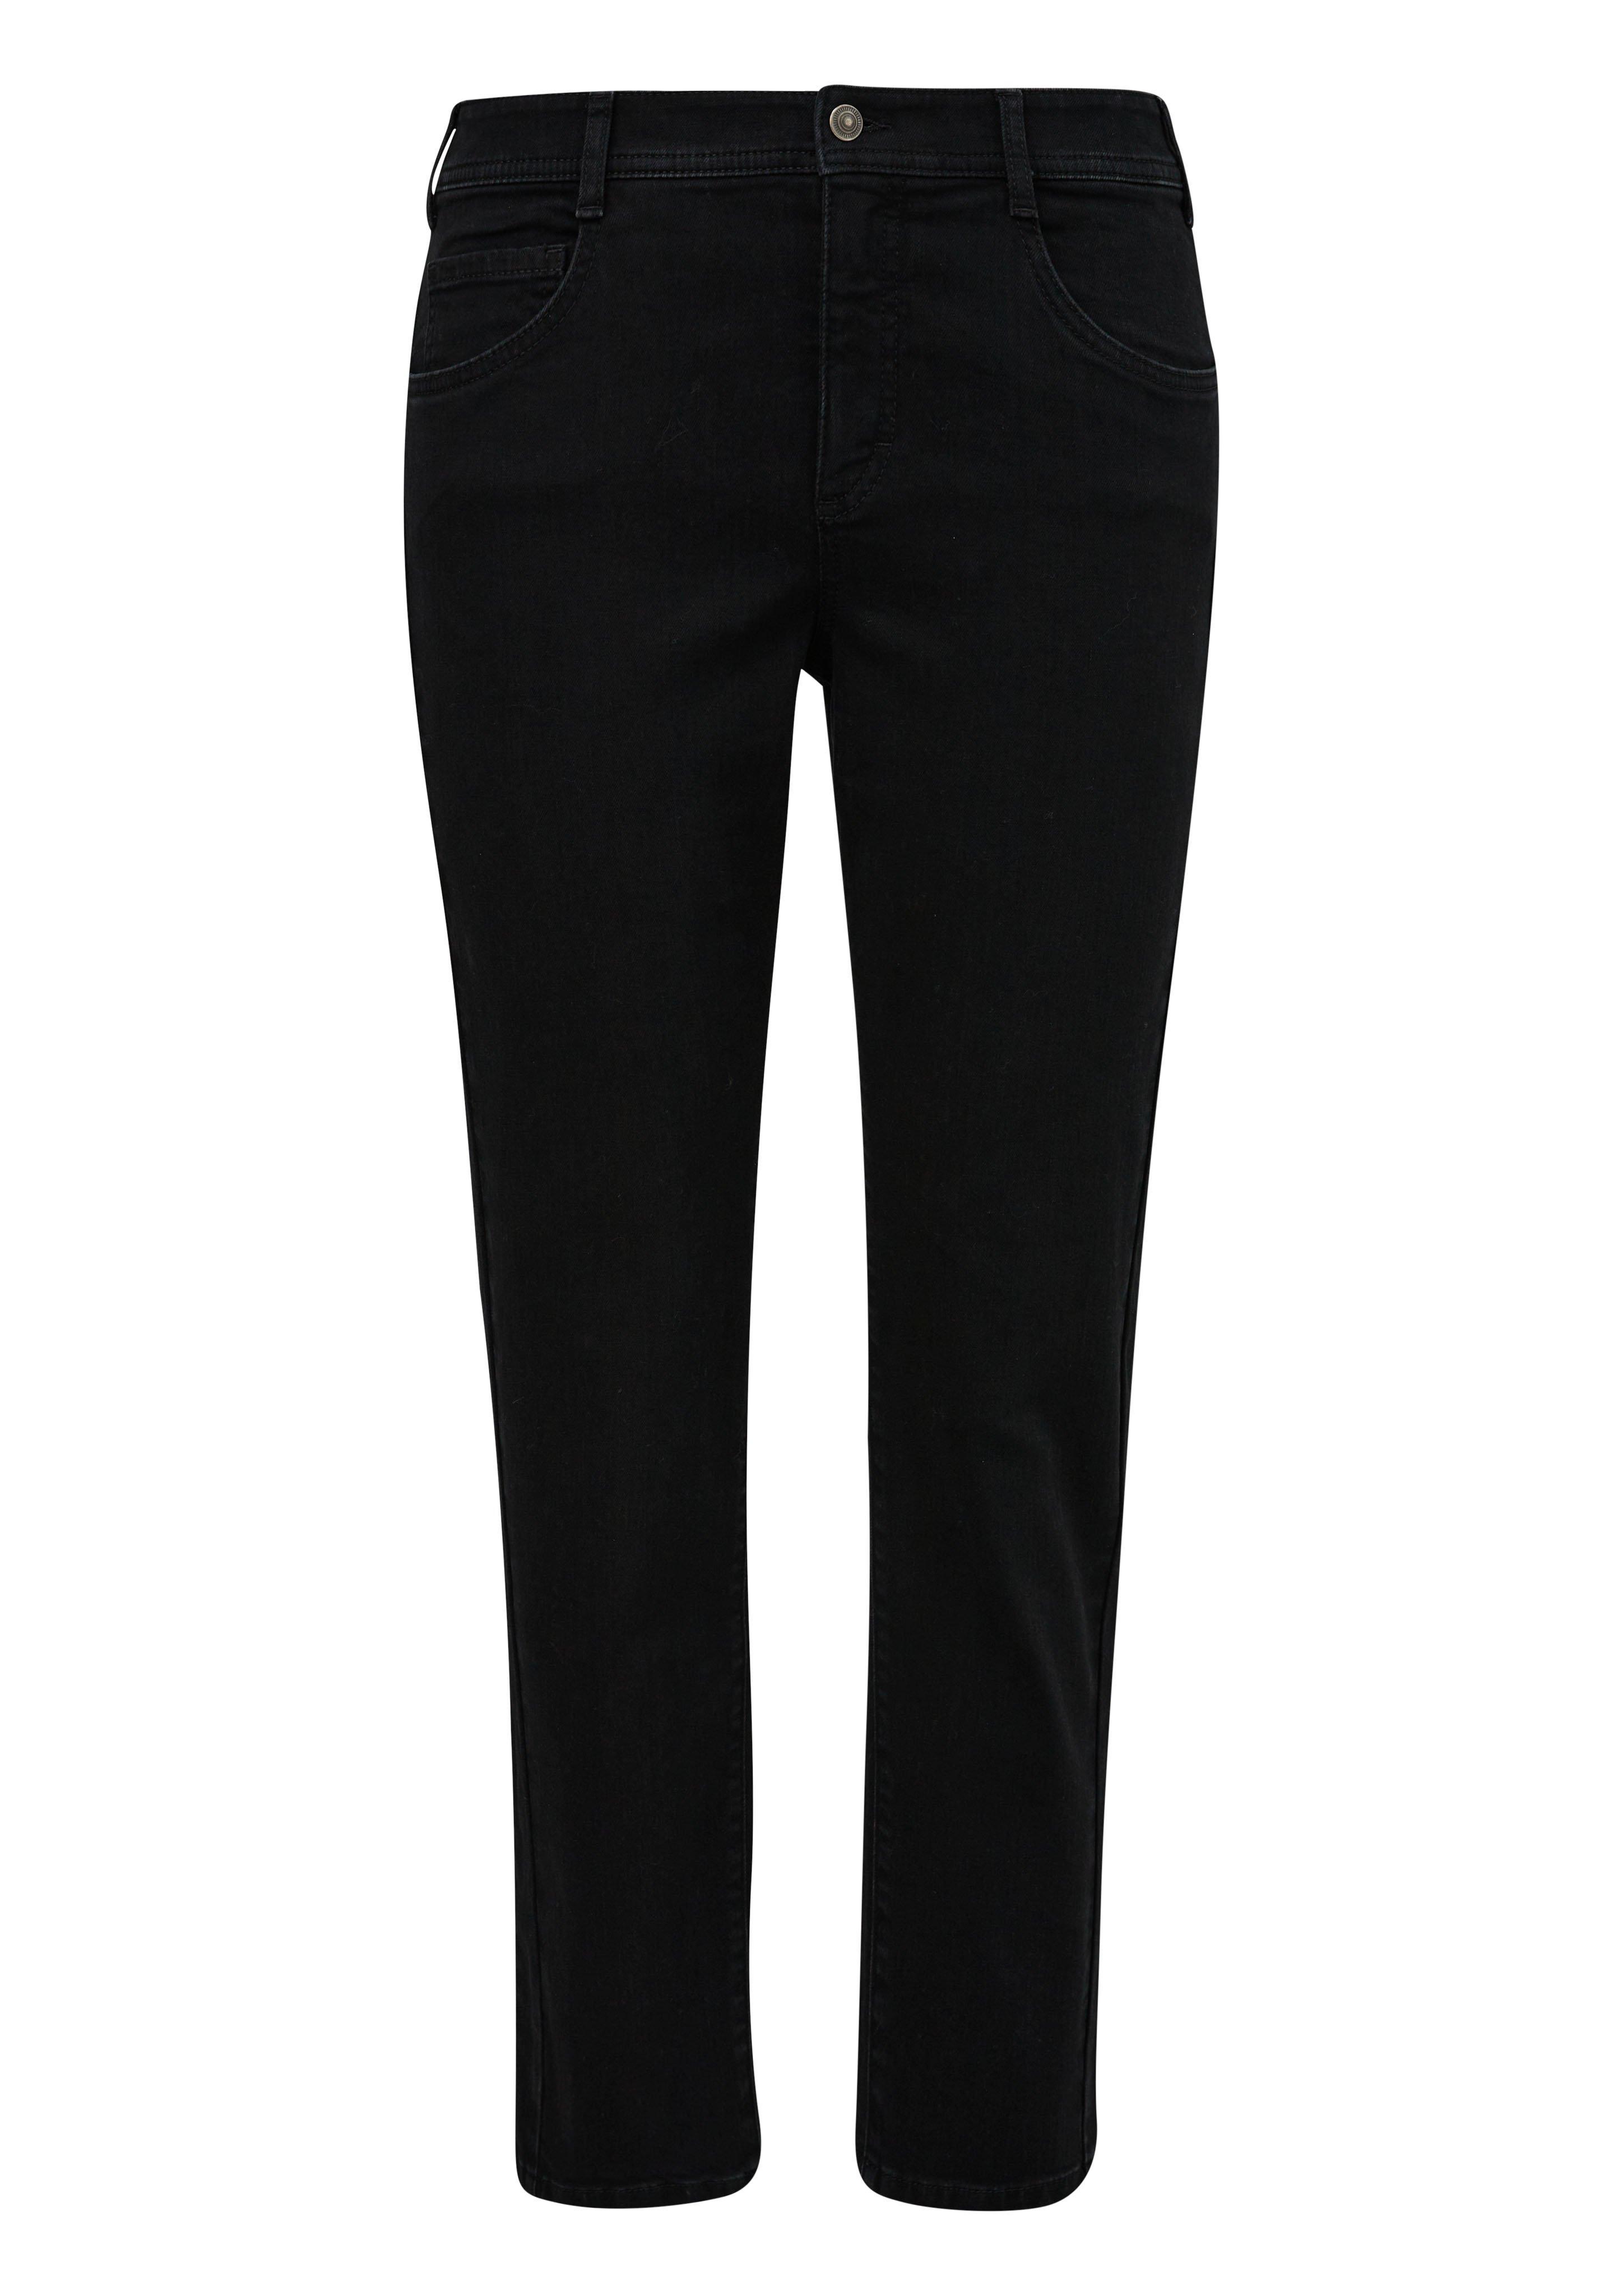 Große Größen: Schmale Jeans in Five-Pocket-Form, black Denim, Gr.44-54